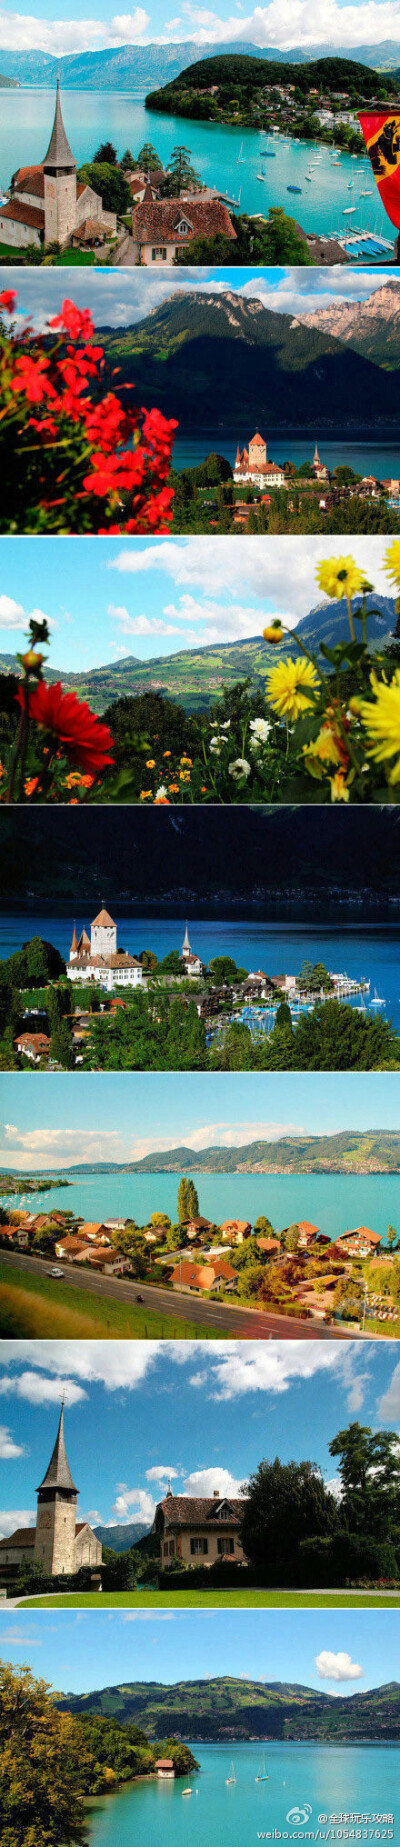 瑞士最美小镇·施皮兹